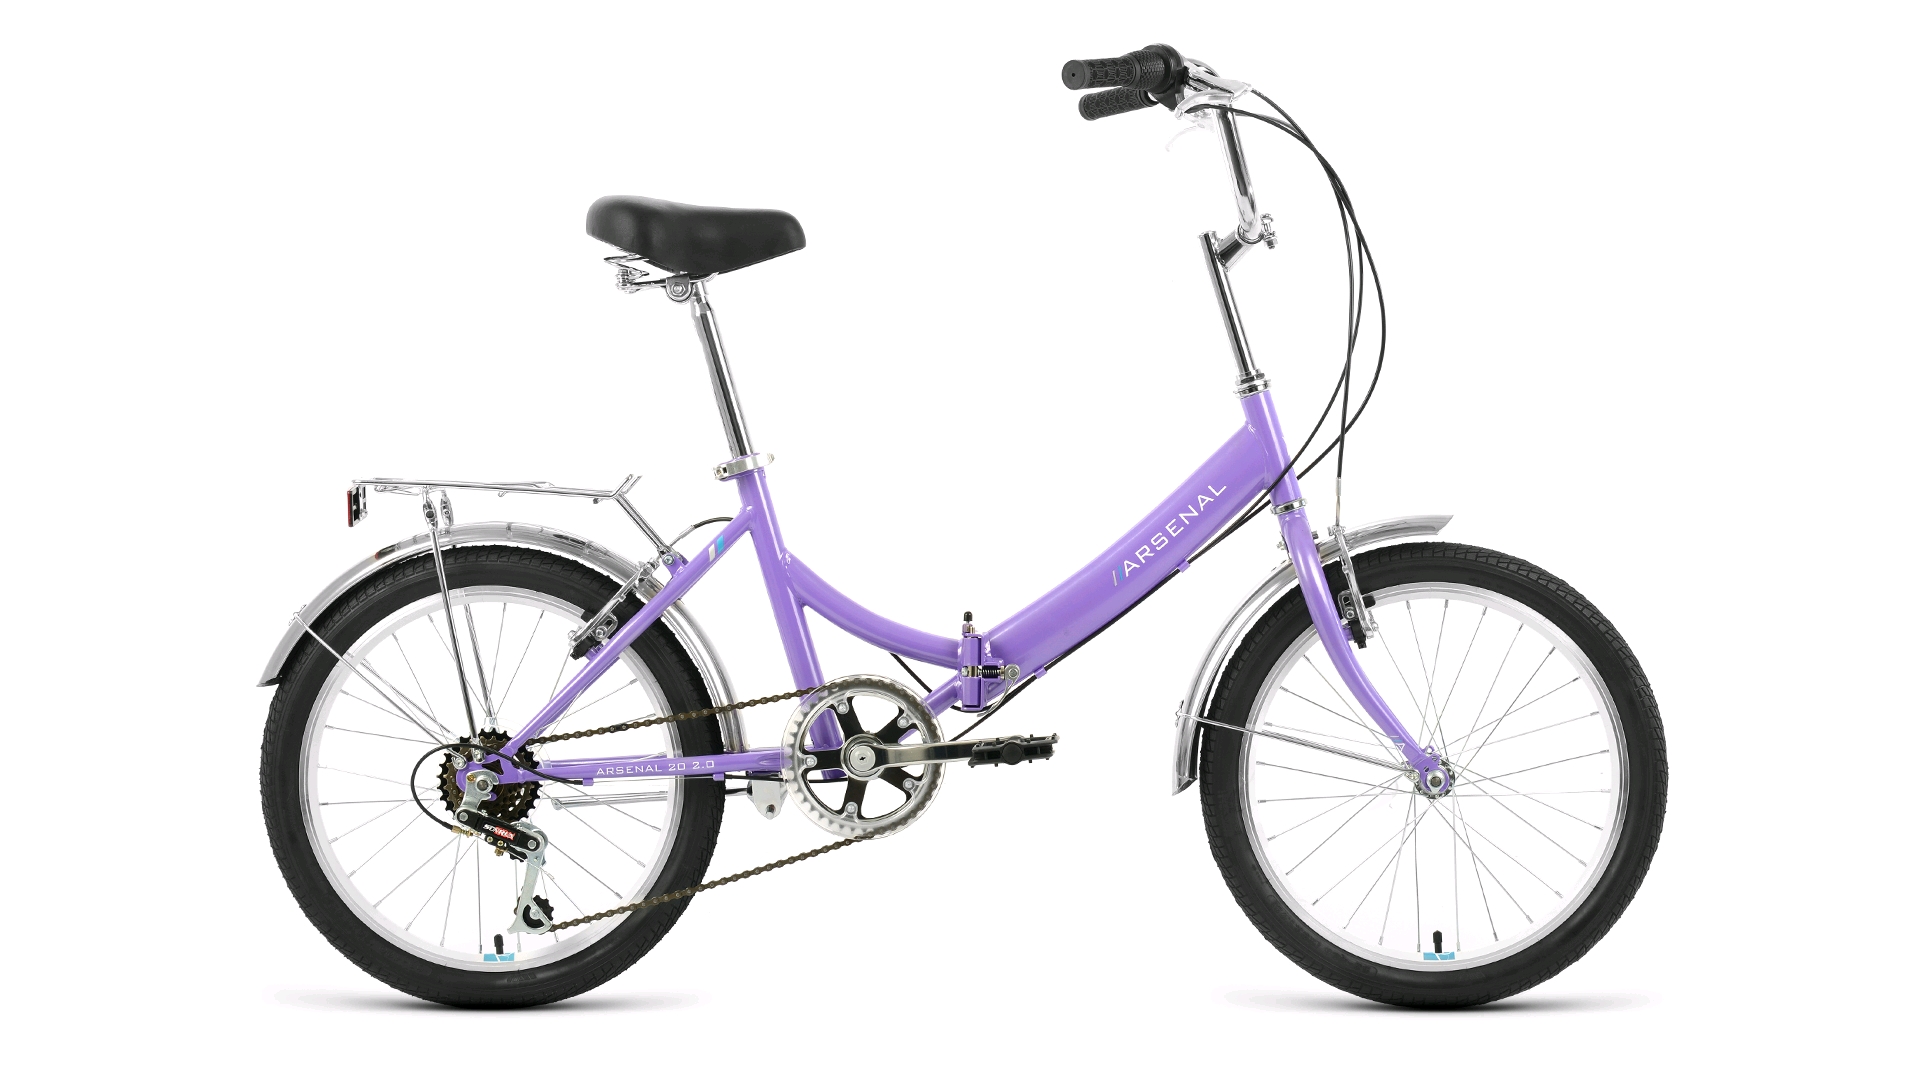 20 FORWARD ARSENAL 20 2.0 (20" 6 ск. рост. 14") 2022, фиолетовый/белый, RBK22FW20537 велосипед